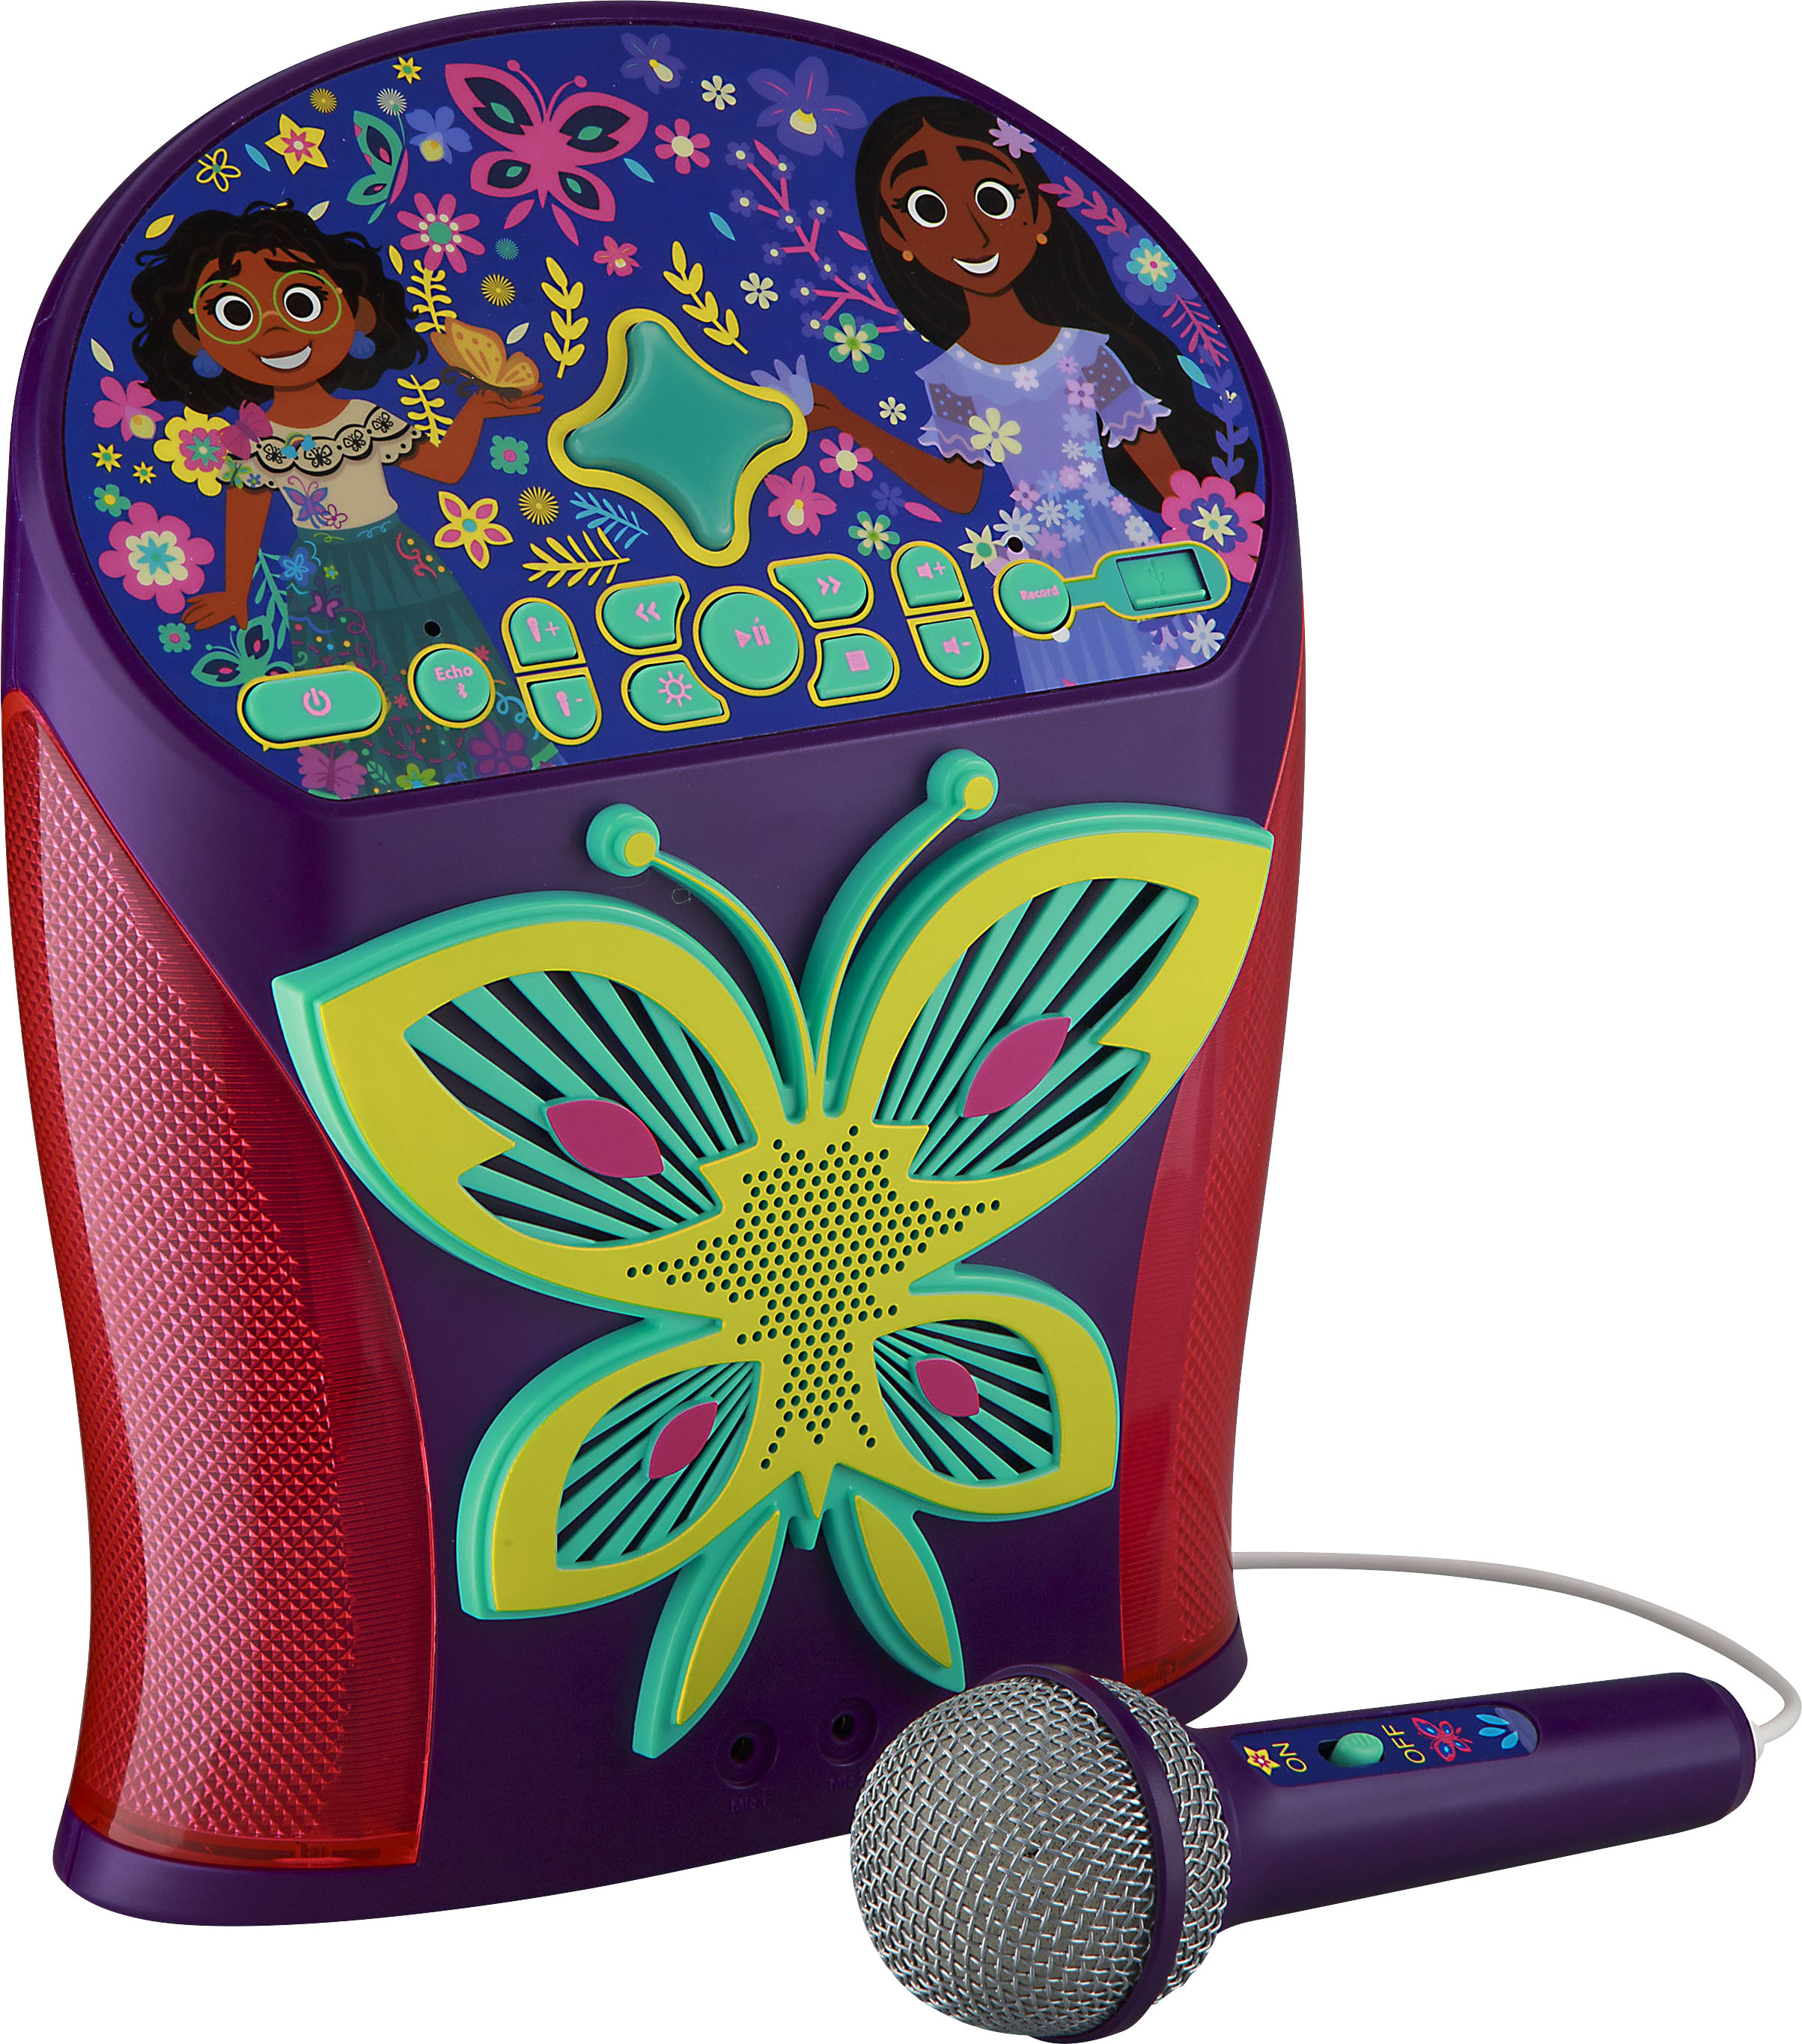 Angle View: eKids - Disney Encanto Bluetooth Karaoke with EZ Link Technology - Purple